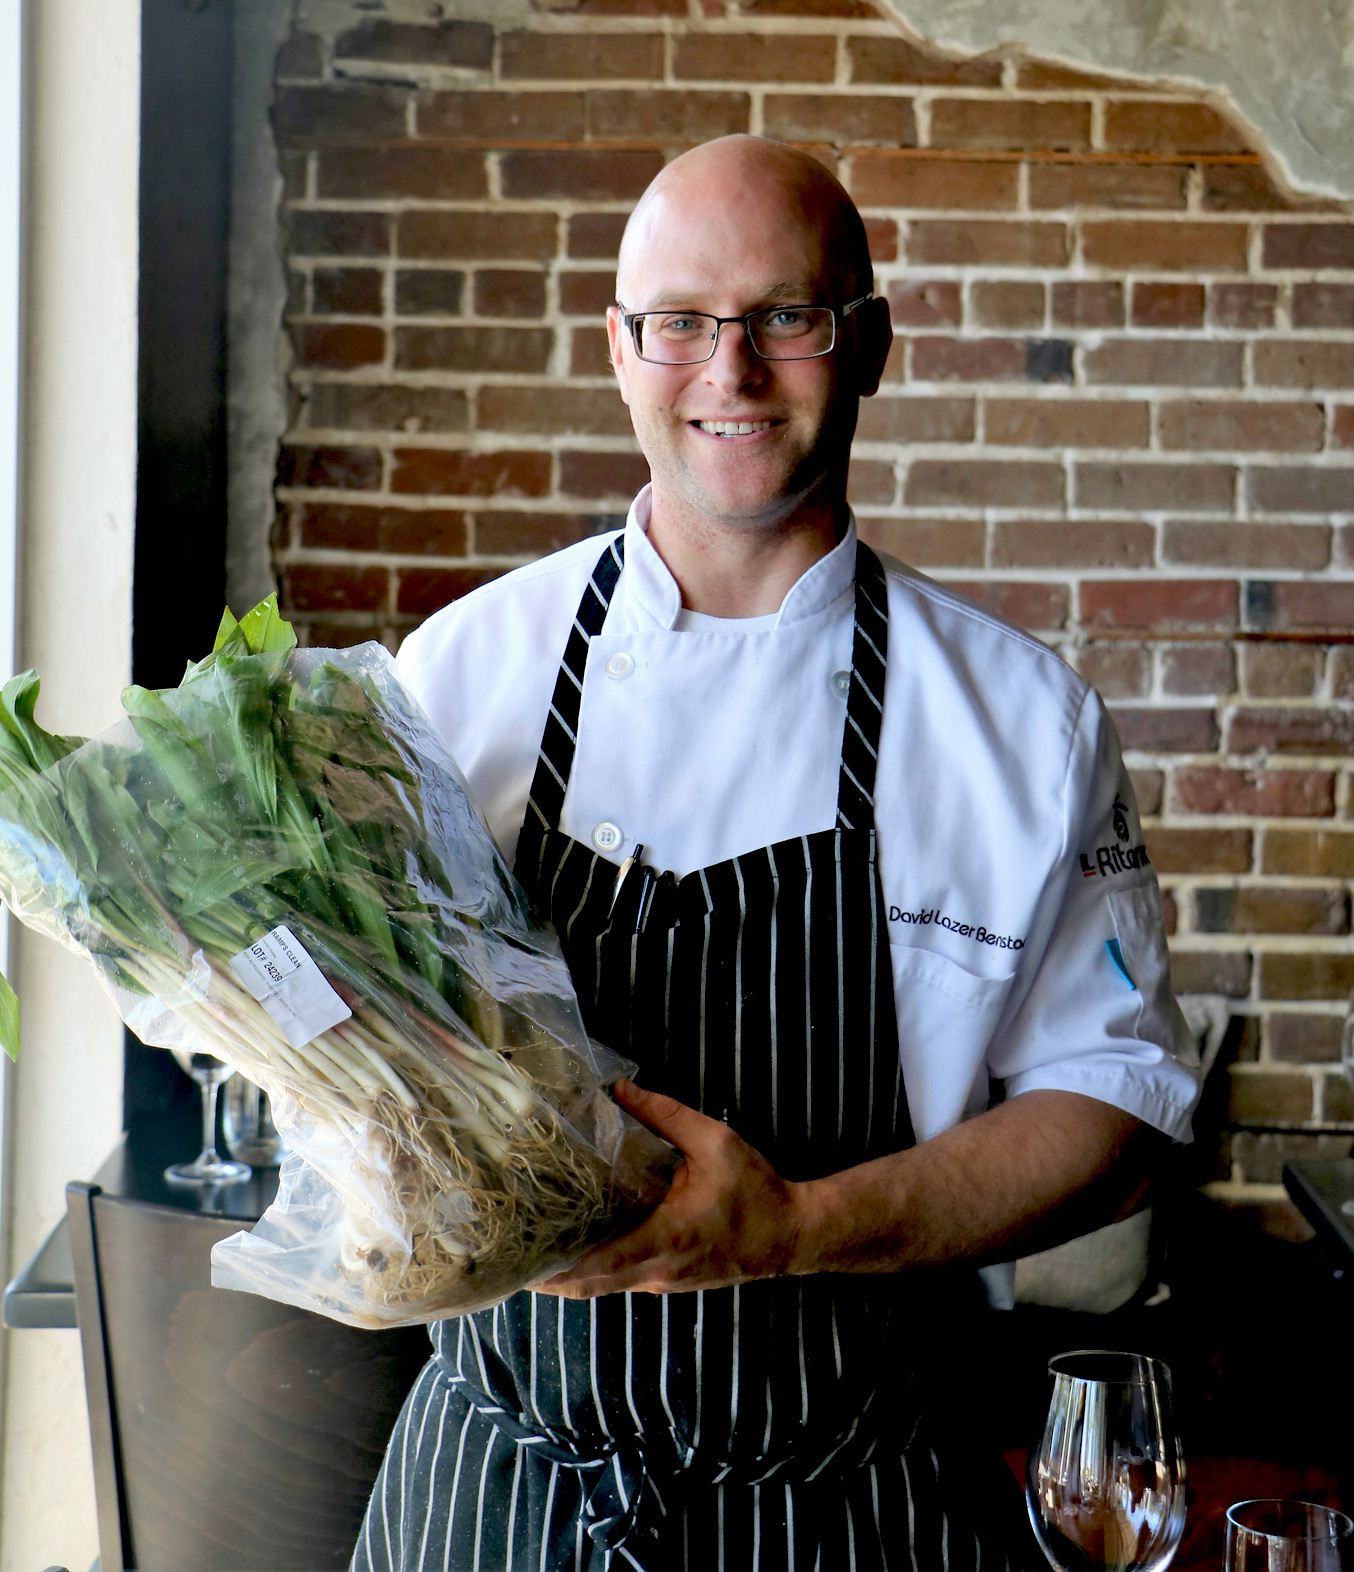 IL Ritorno - Chef David Benstock holding a bag of Ramps